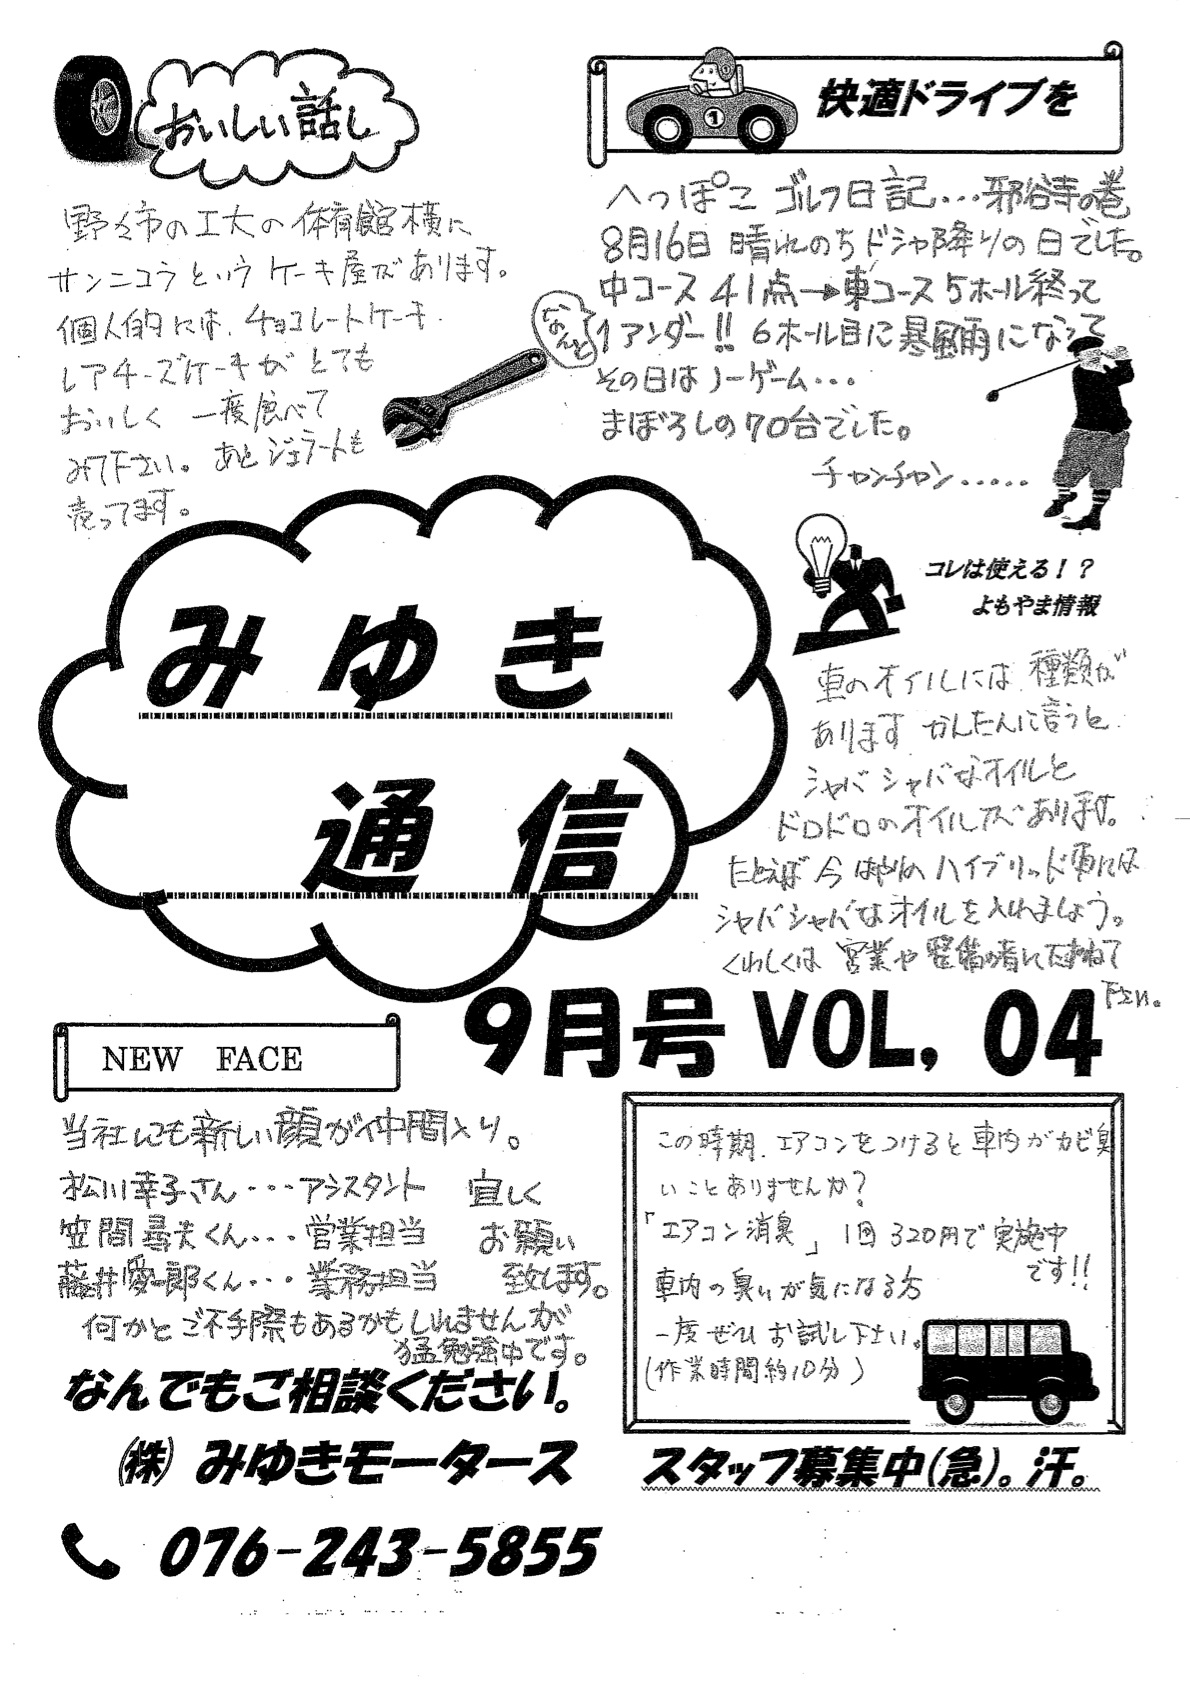 みゆき通信vol.04 9月号